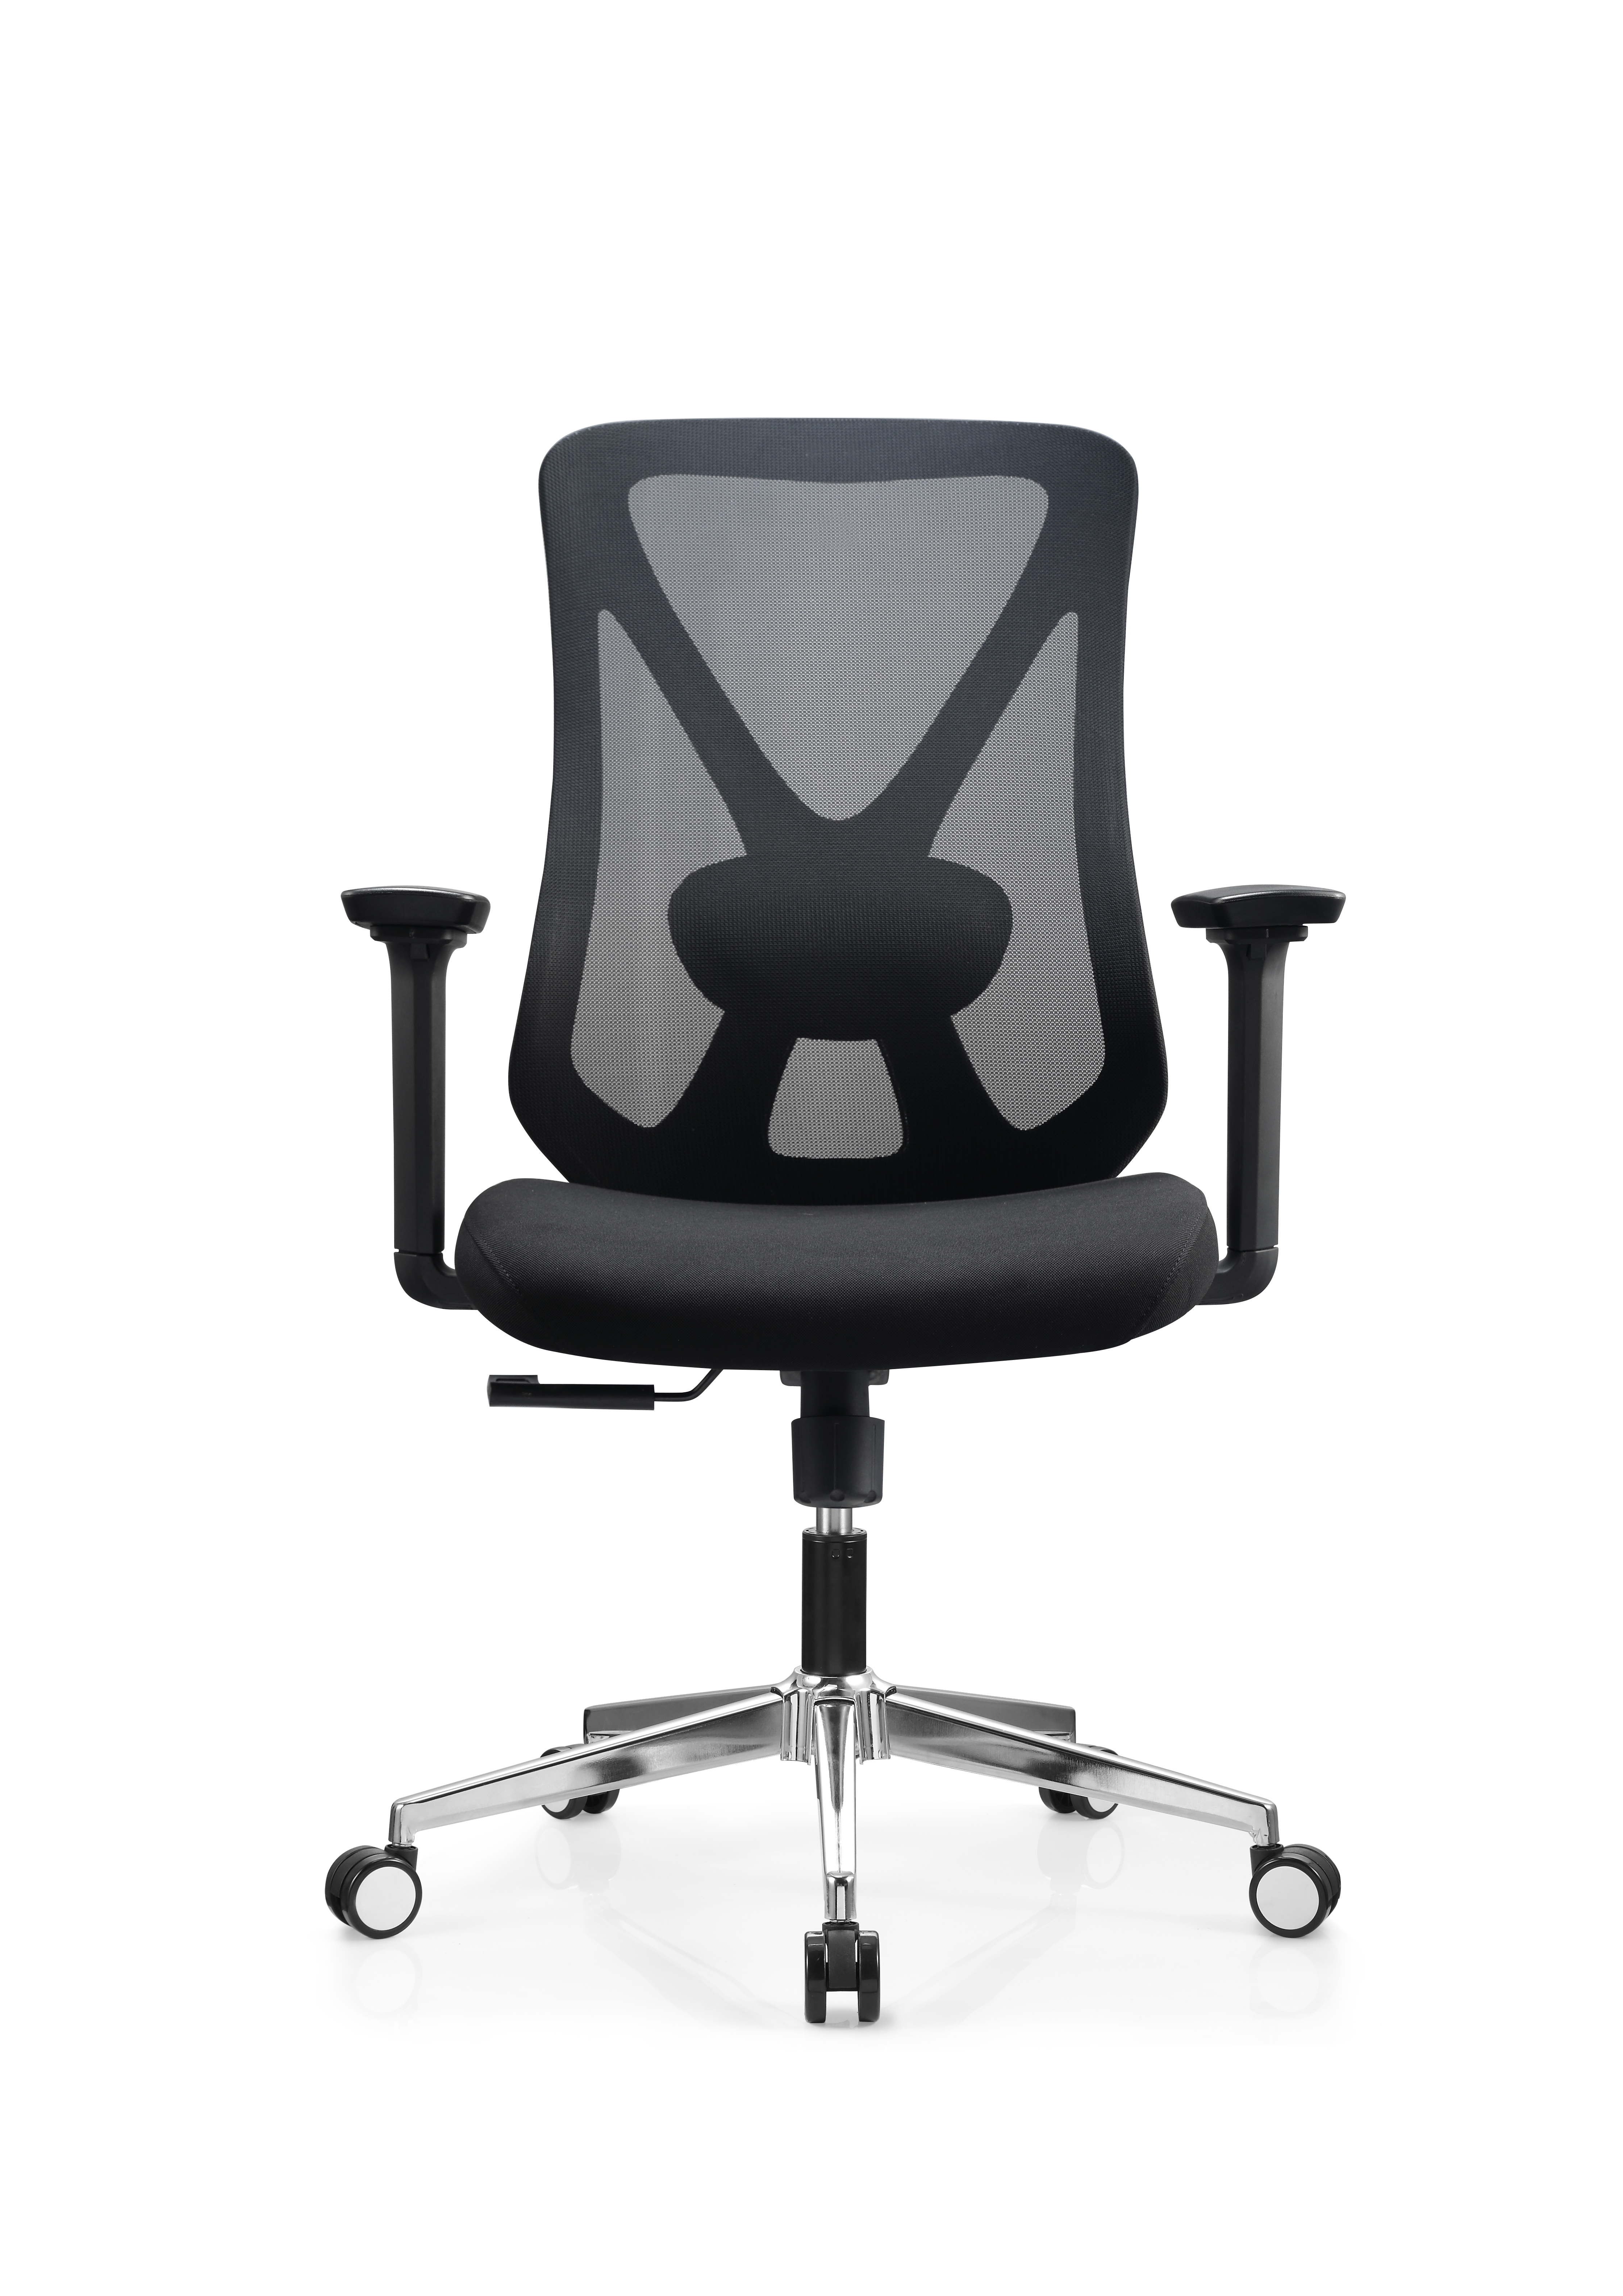 Newcity 629B 最畅销办公家具行政网椅，带舒适靠背和高度可调节现代设计电脑网椅供应商中国佛山